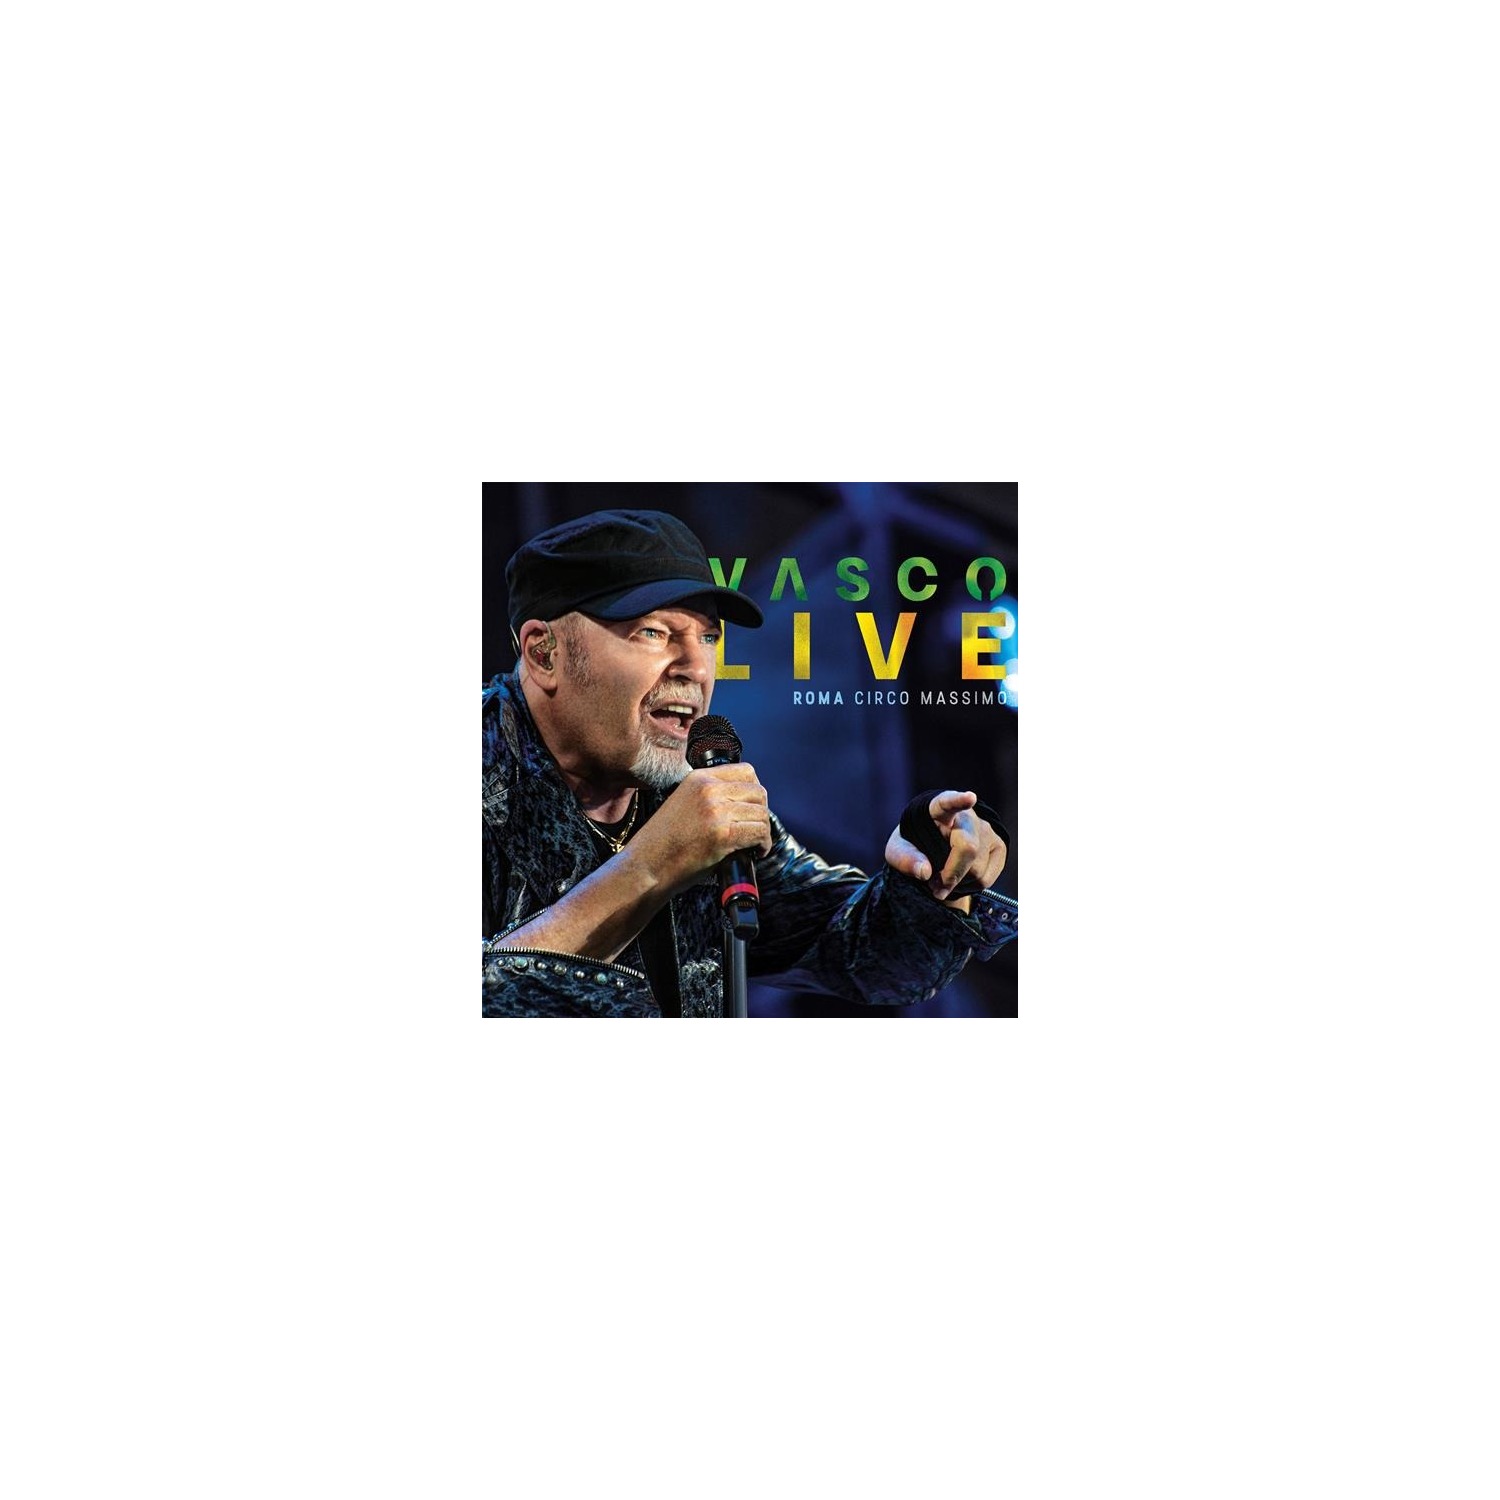 Immagine per CD+DVD+Bluray Vasco Live Roma Circo Massimo da DIMOStore